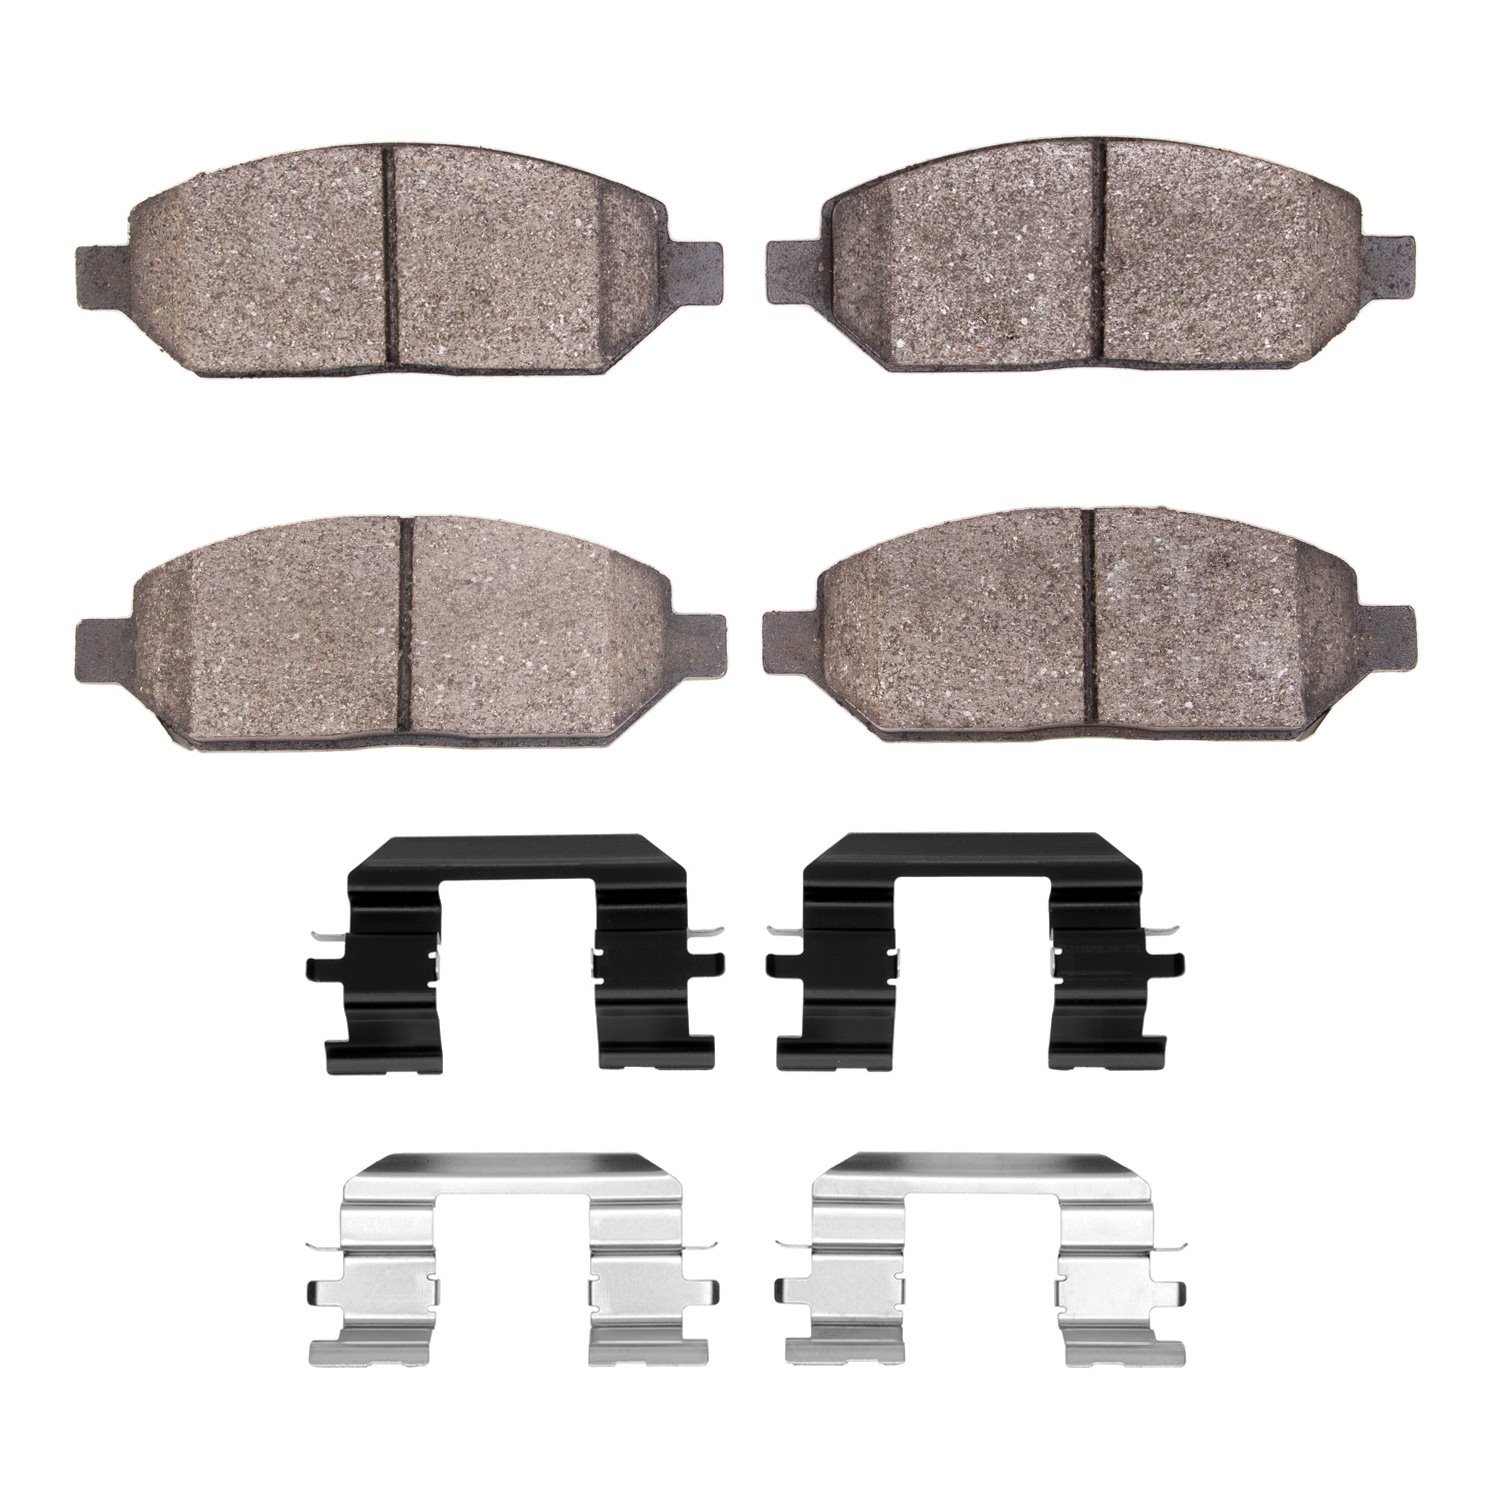 1310-2024-01 3000-Series Ceramic Brake Pads & Hardware Kit, 2017-2018 GM, Position: Front